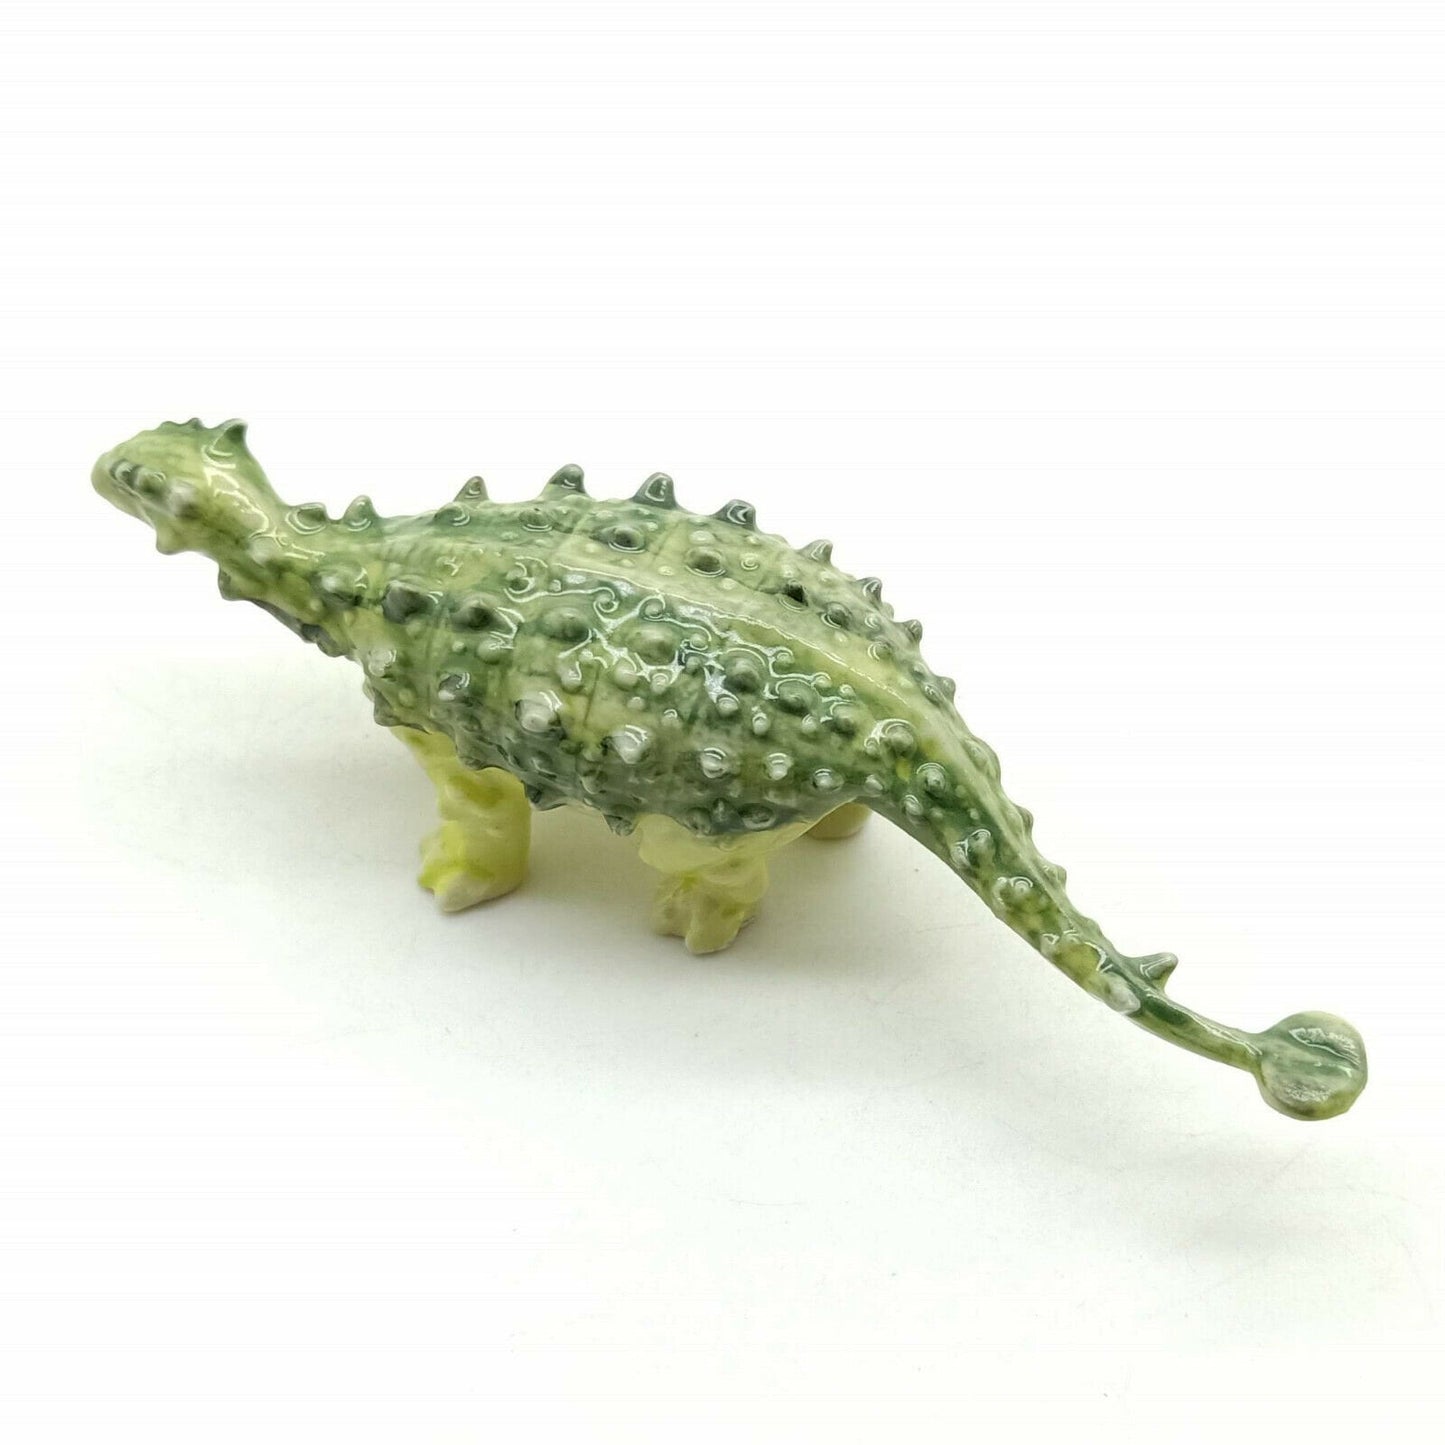 Green Pinacosaurus Dinosaur Ceramic Figurine Statue